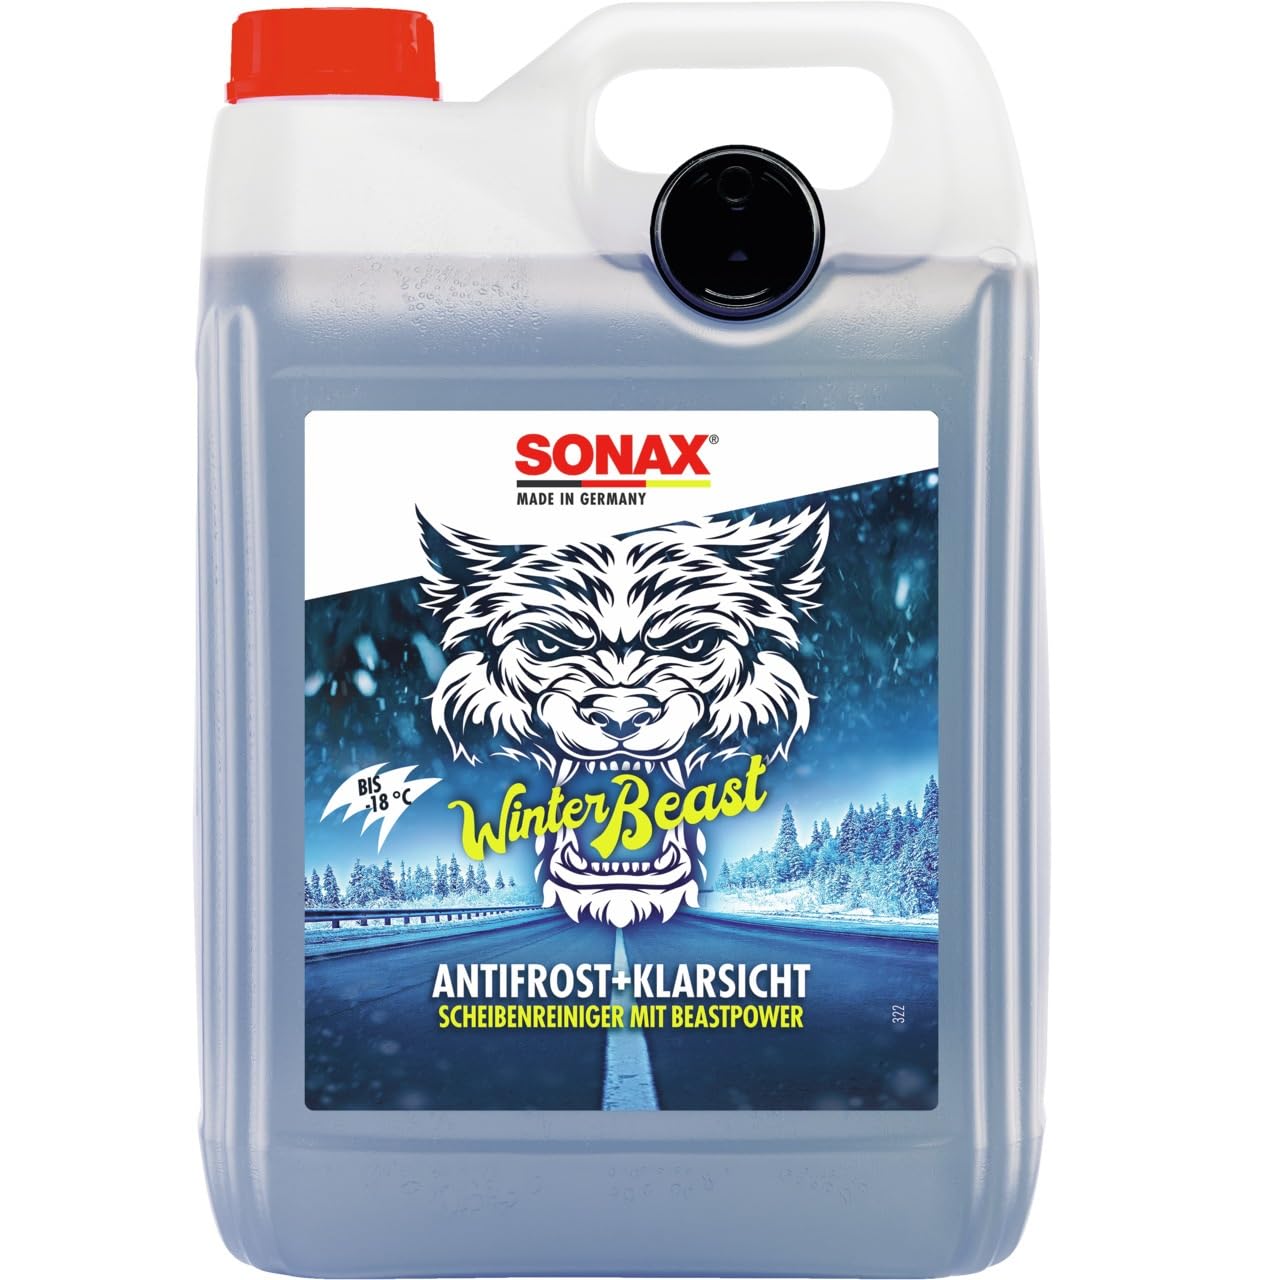 SONAX WinterBeast AntiFrost+KlarSicht -18 °C (5 Liter) schneller, schlierenfreier und effektiver Scheibenreiniger für den Winter | Art-Nr. 01355050 von SONAX